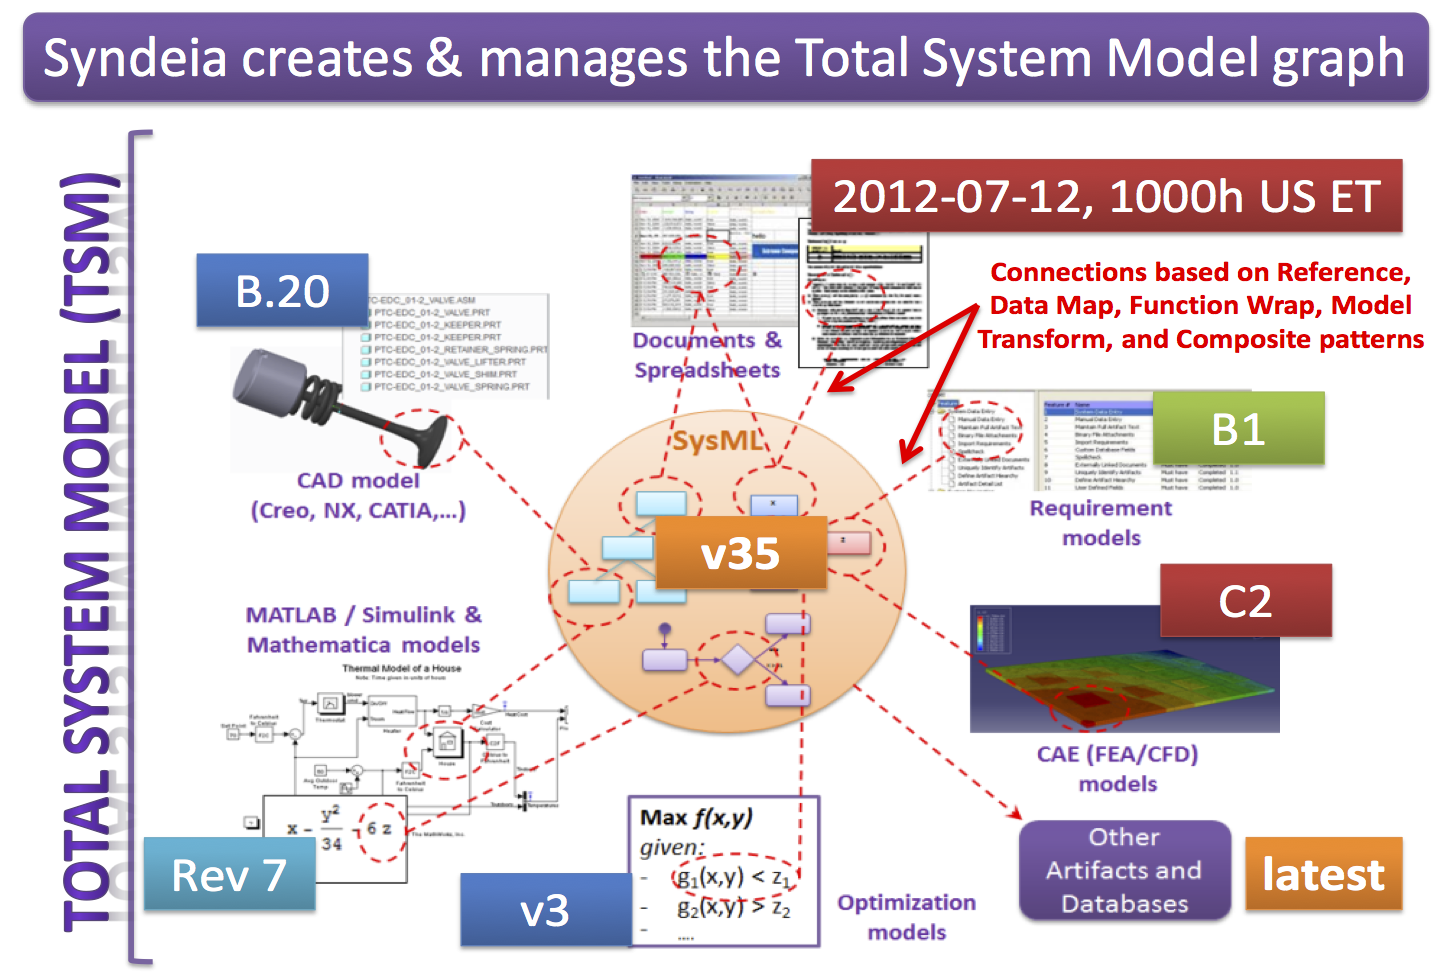 Total systems. SD (System Dynamics) модель. Цифровой двойник CAE CAD схема. Программы BIM CAD CAE. Рекомендательная система модель.